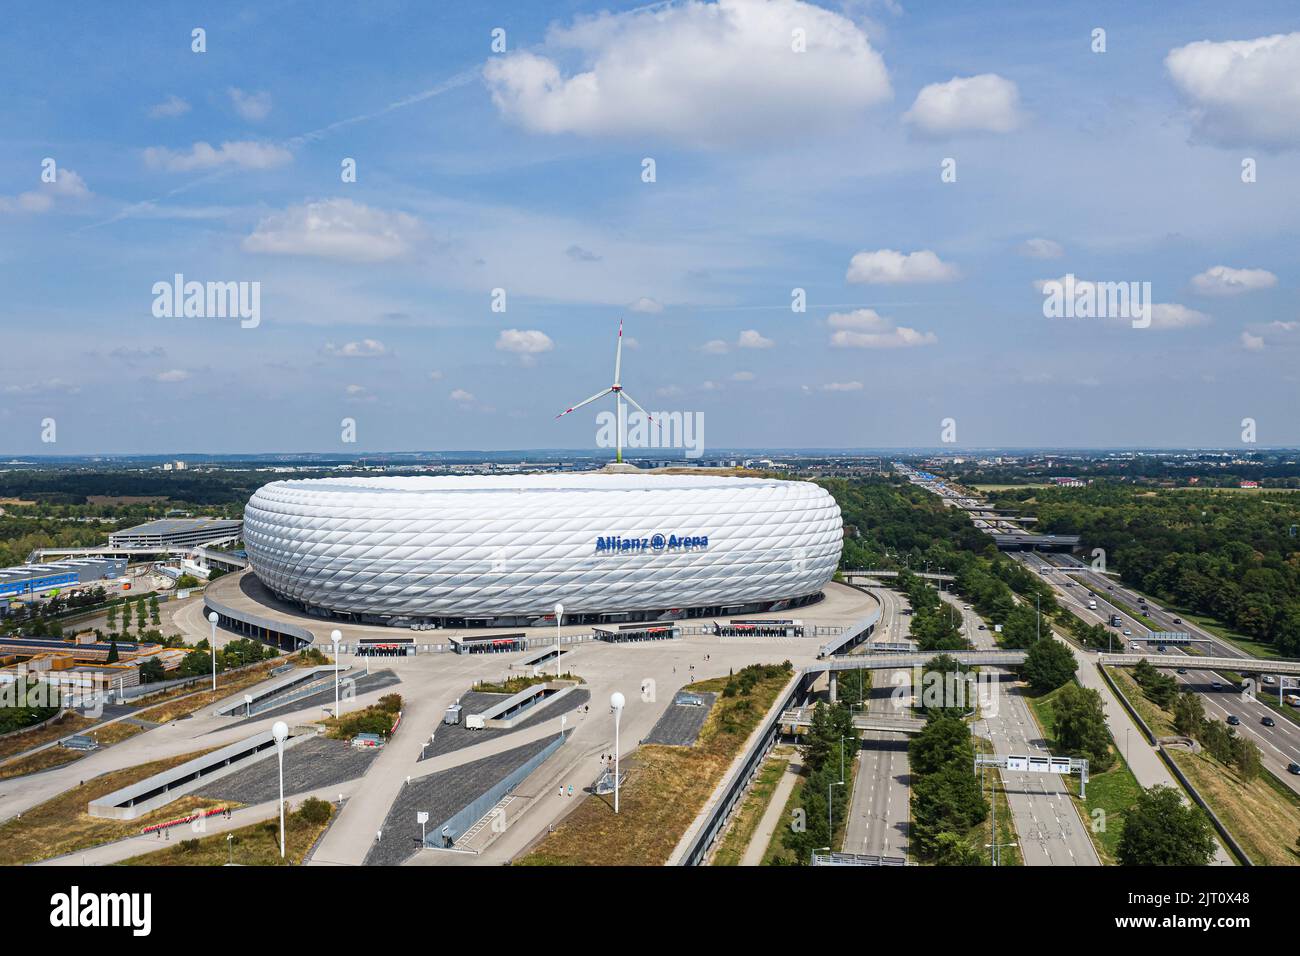 Vue aérienne du stade de football Allianz Arena. Il a été conçu par Herzog de Meuron et ArupSport. MUNICH, ALLEMAGNE - AOÛT 2022 Banque D'Images